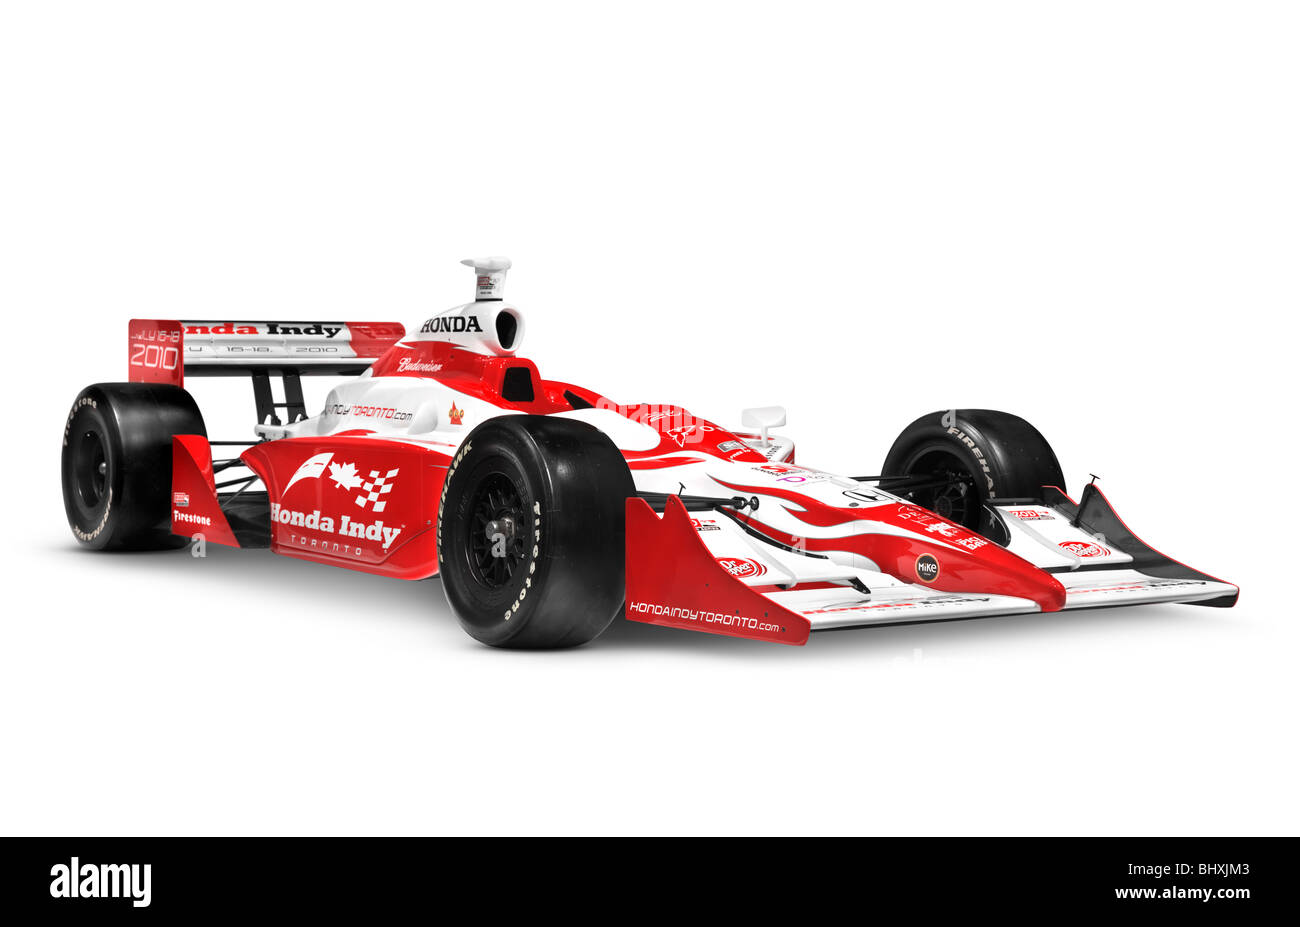 Führerschein und Ausdrucke auf MaximImages.com – Roter Honda Indy Rennwagen isoliert auf weißem Hintergrund mit Clipping-Pfad Stockfoto